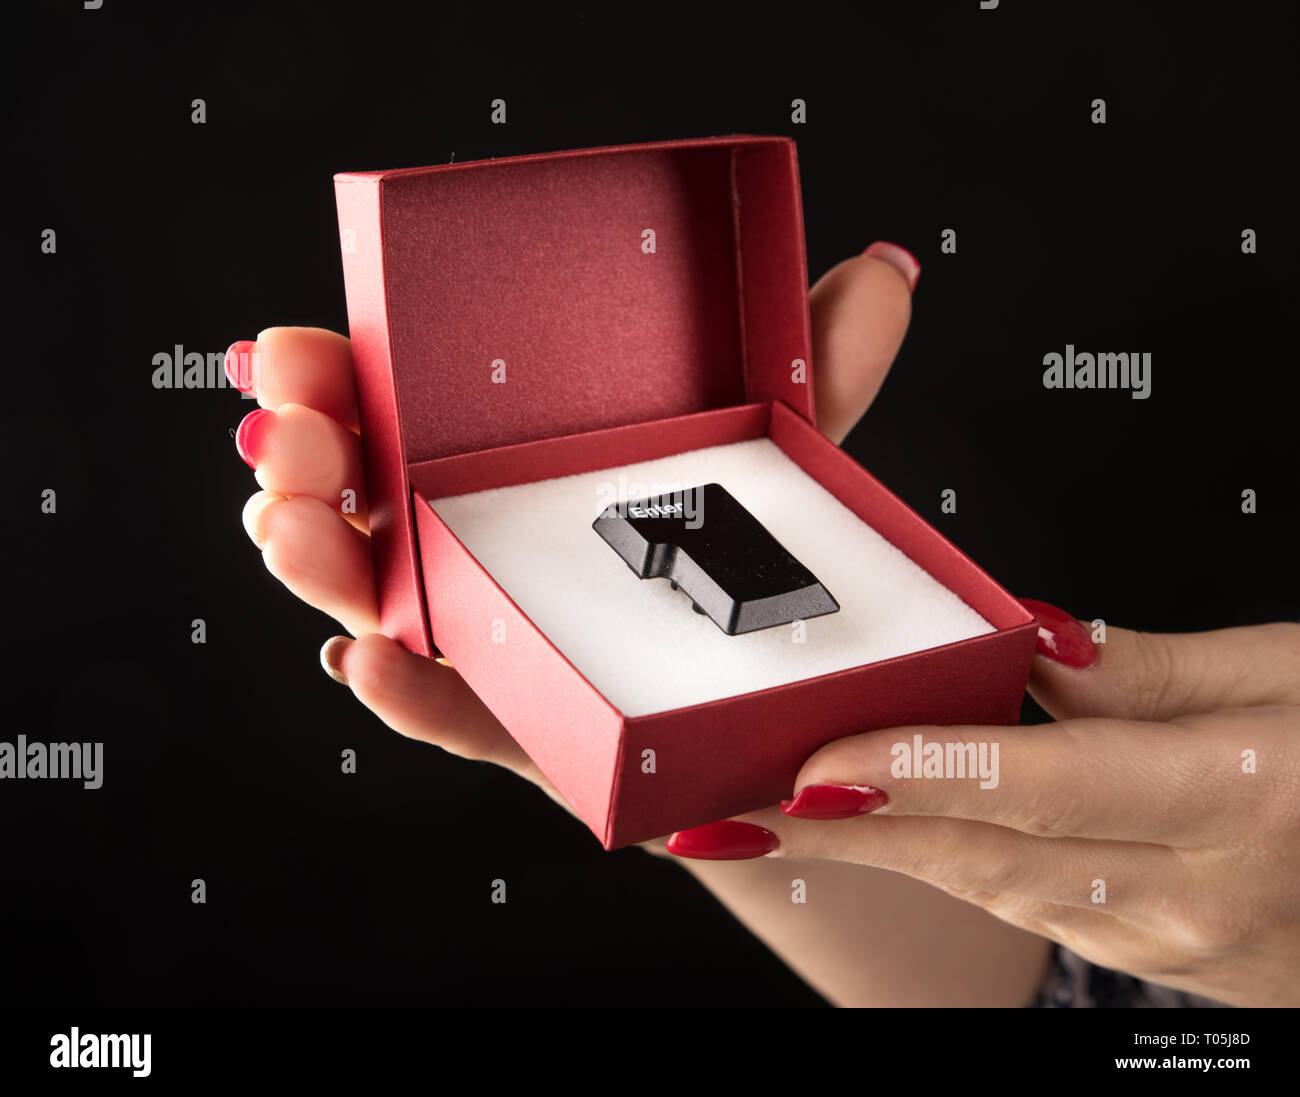 Foto concettuale di un pulsante "Invio" in una confezione regalo rossa Foto Stock